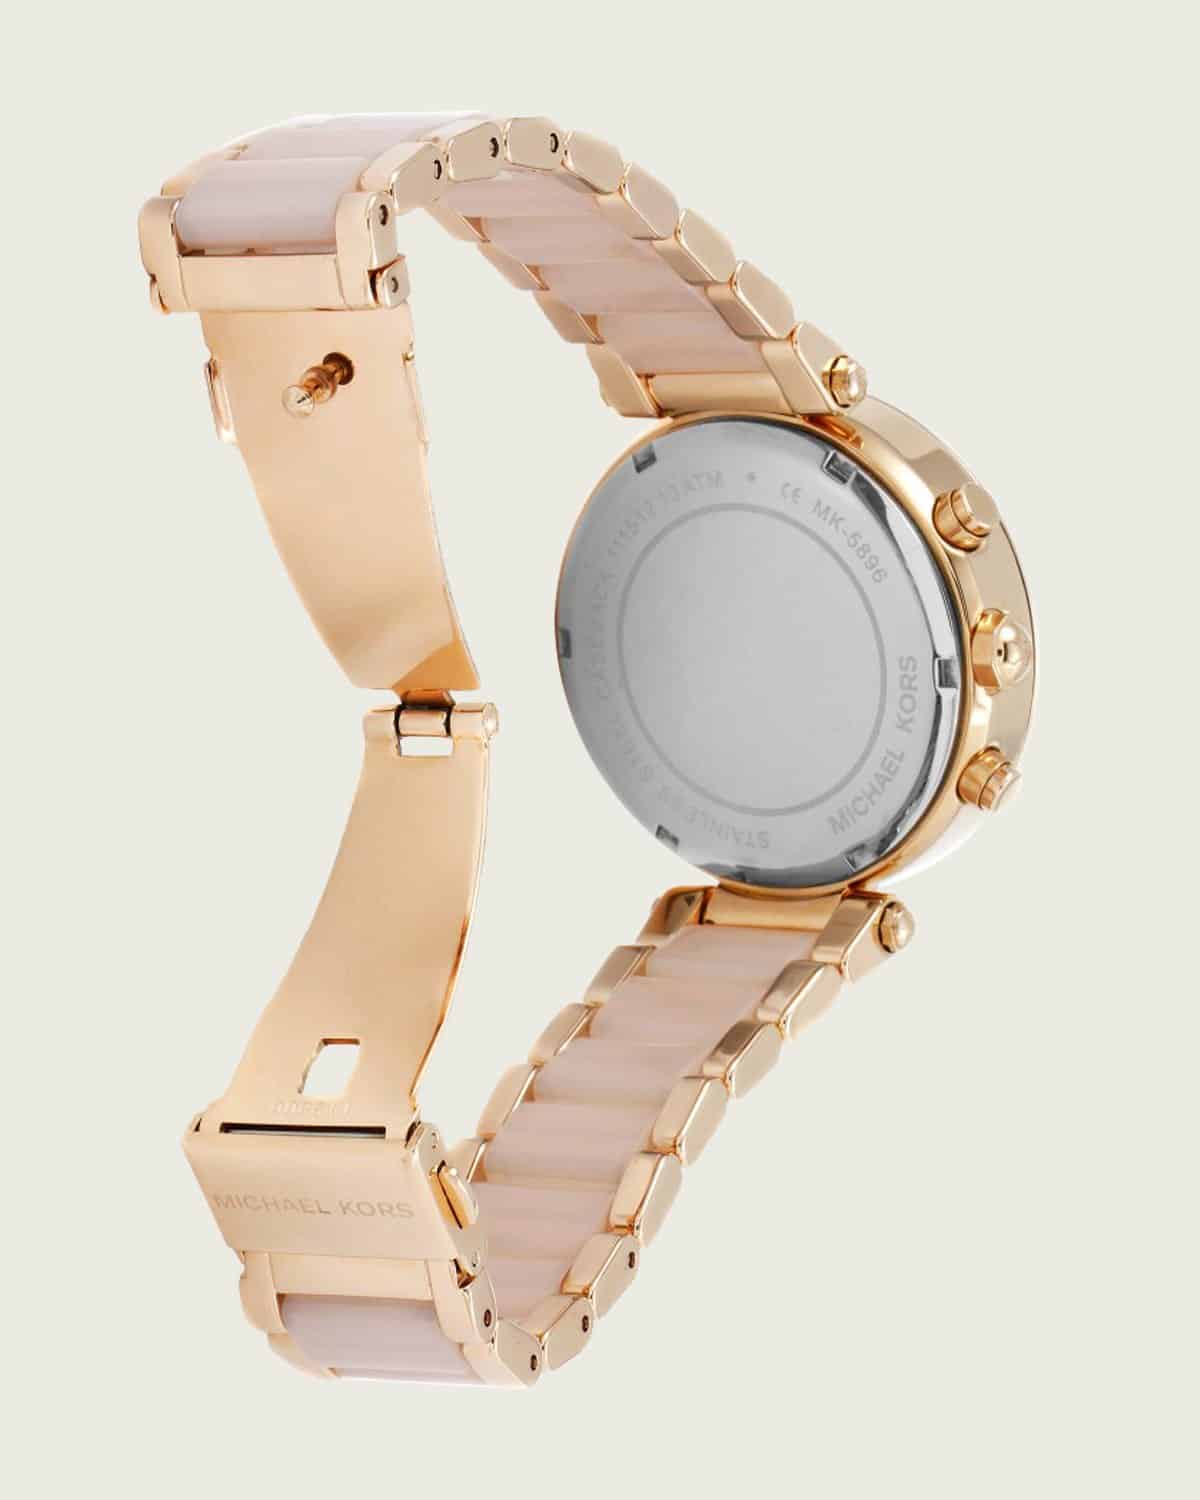 Đồng hồ thông minh nữ Michael Kors smart watch  Dòng Sofie Gold Tone  MKT5068  Shopee Việt Nam